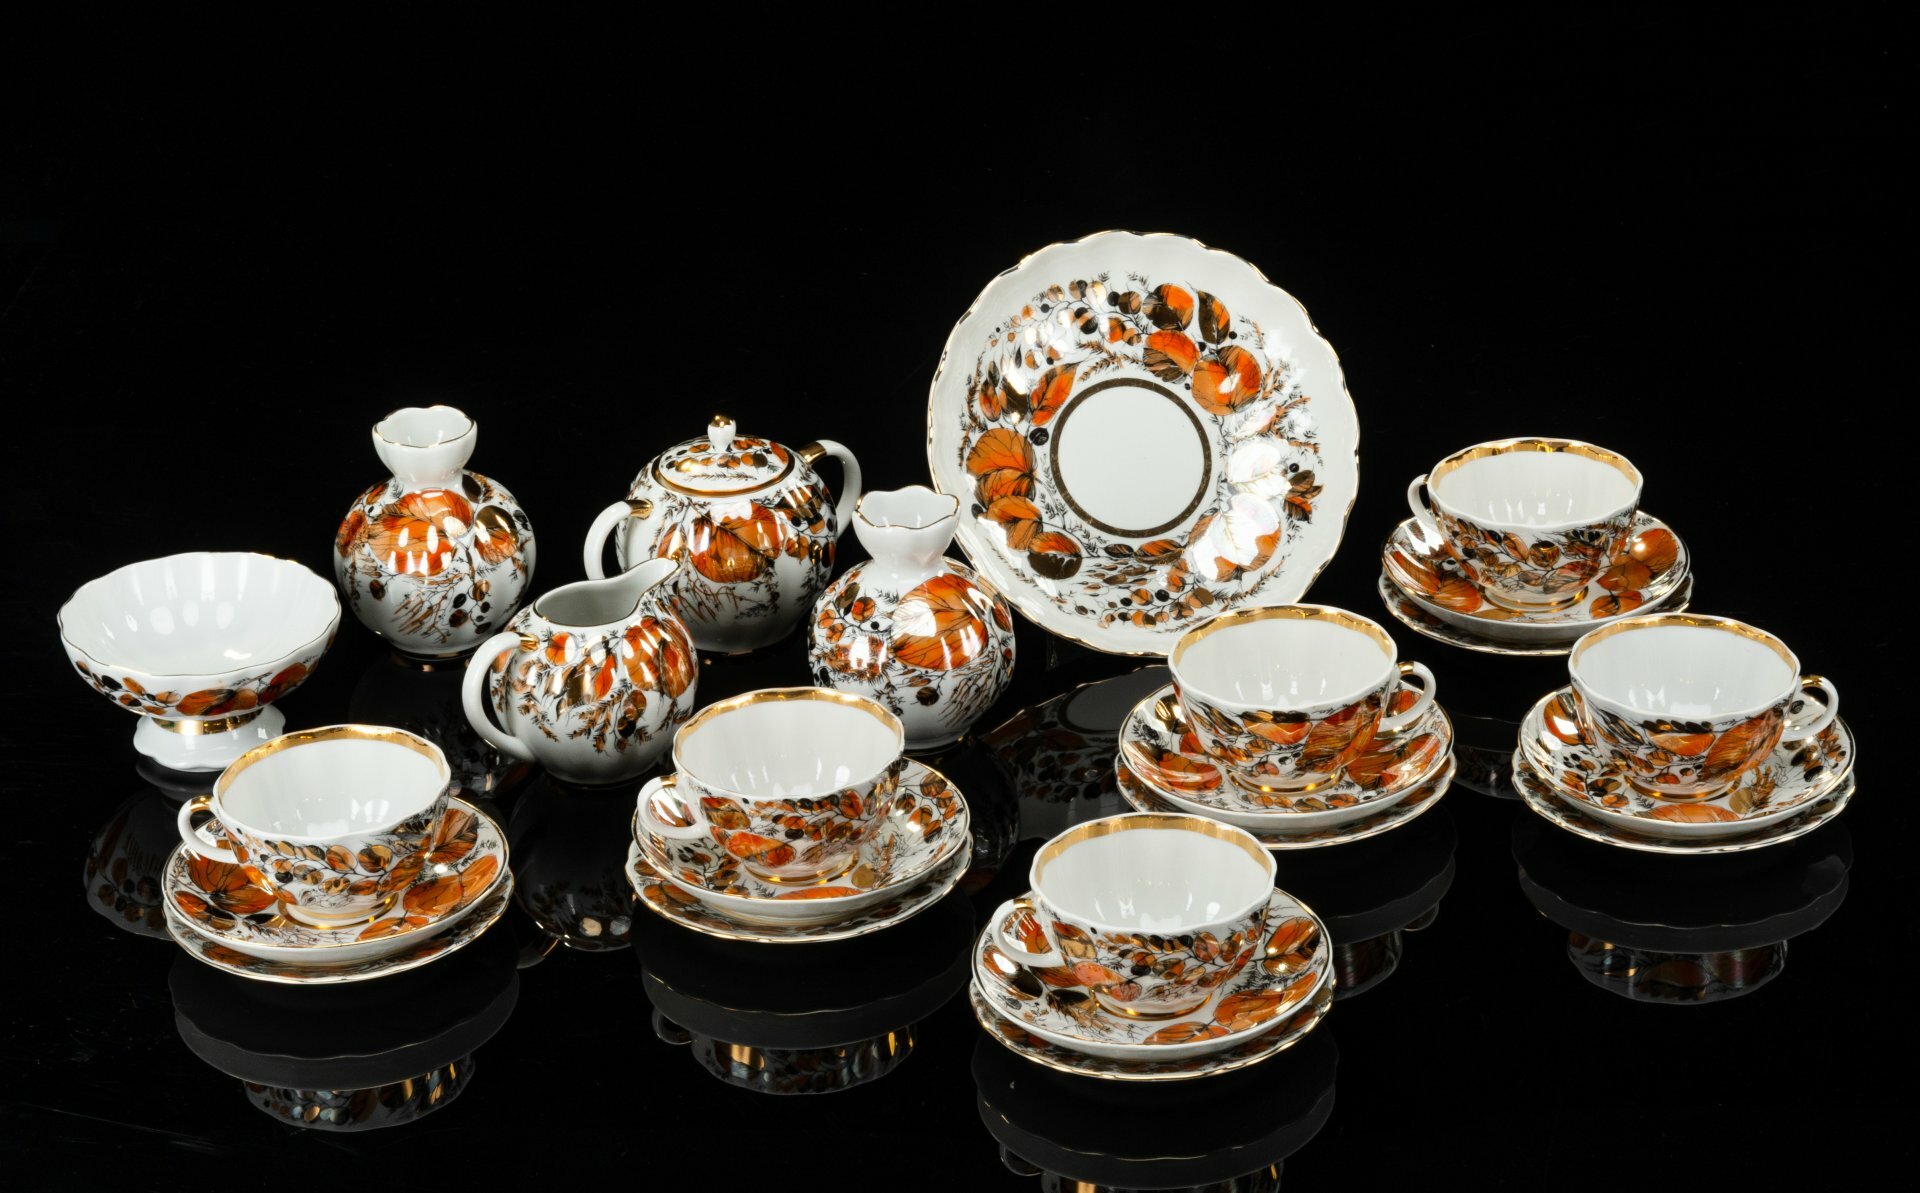 Сервиз чайный "Золотая осень" на 6 персон (24 предмета), фарфор, деколь, люстр